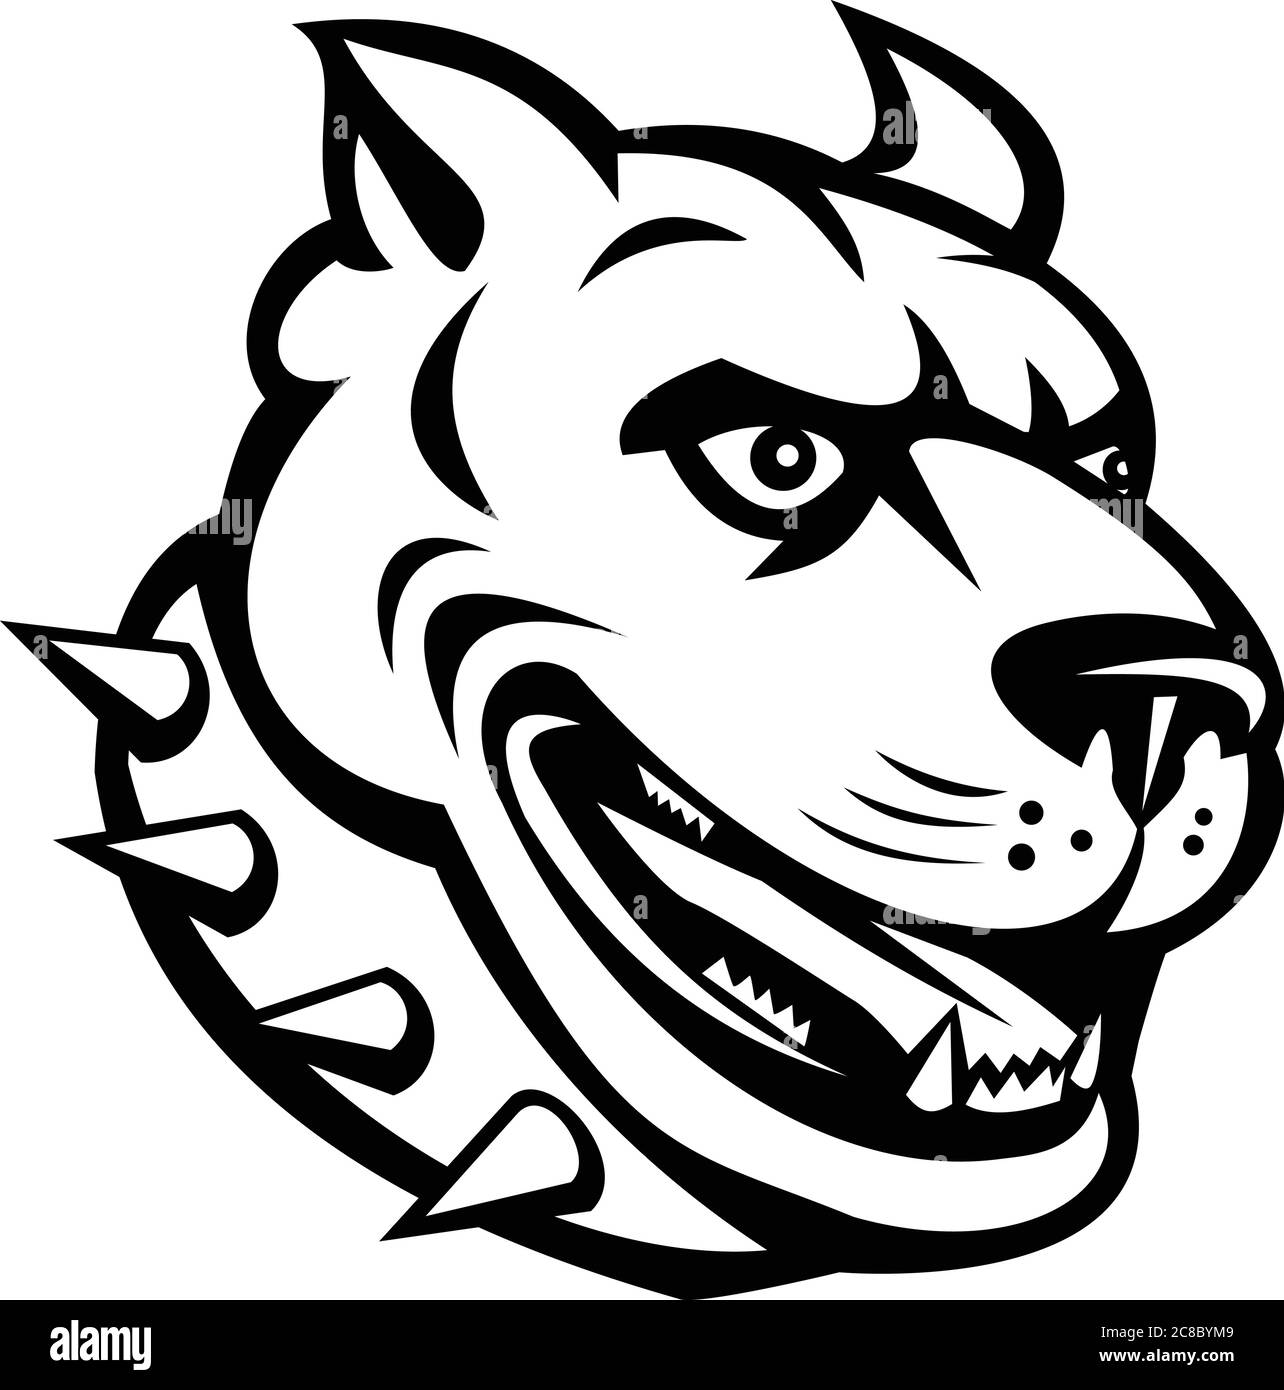 Mascotte illustration de la tête d'un terrier américain de taureau de fosse ou de pitbull, un type de chien descendu de taureau et de terrier, avec le collier vu du côté Illustration de Vecteur